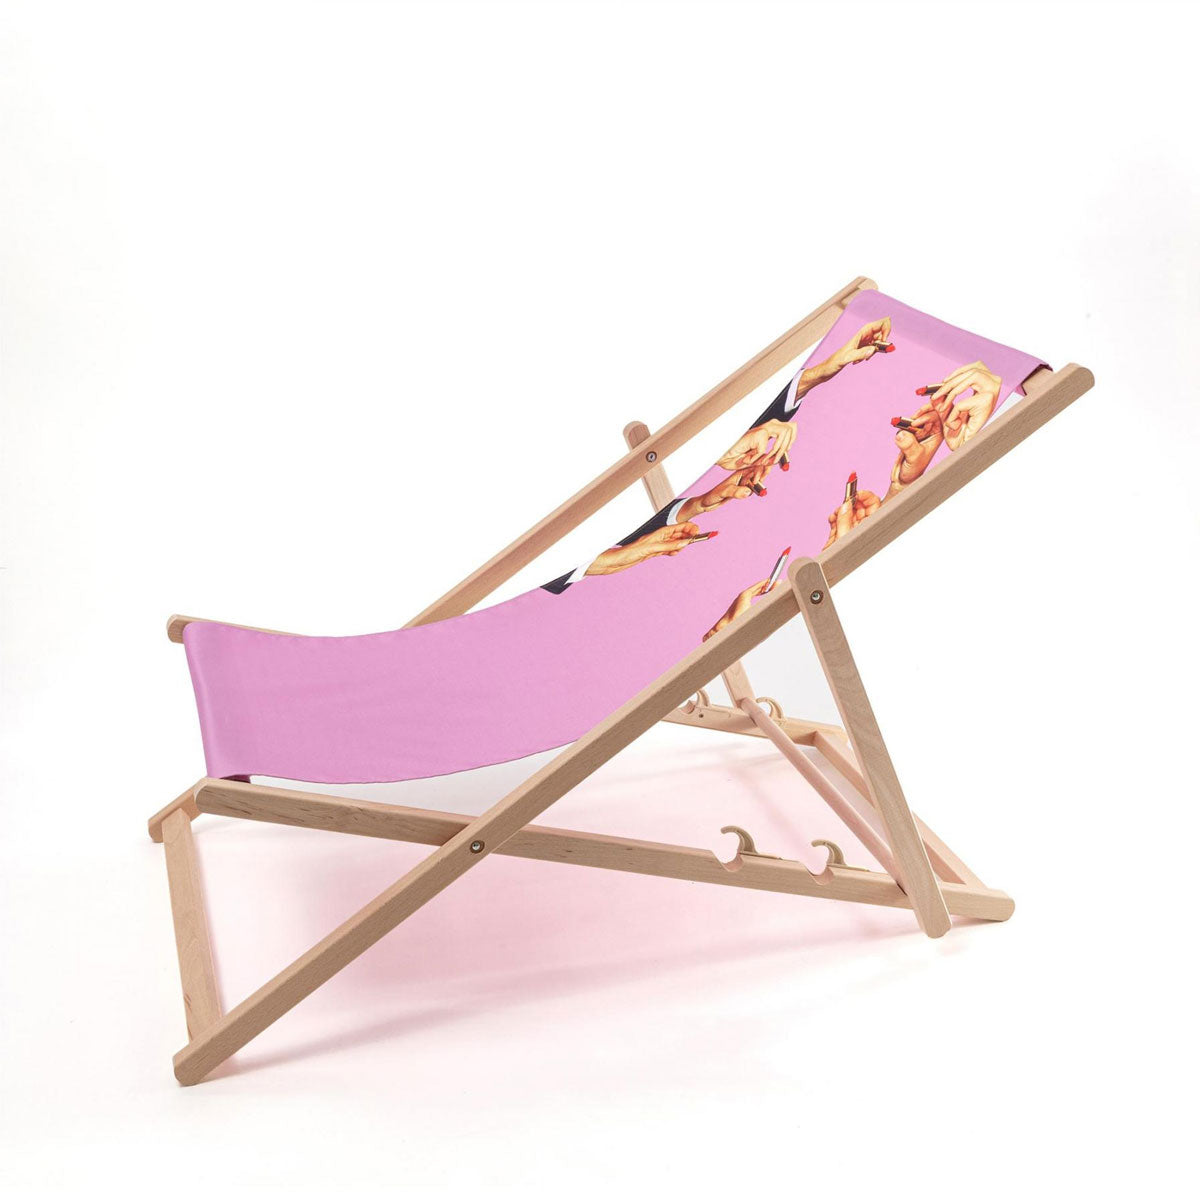 Seletti X Toiletpaper &#39;Lipsticks Pink&#39; Deck Chair